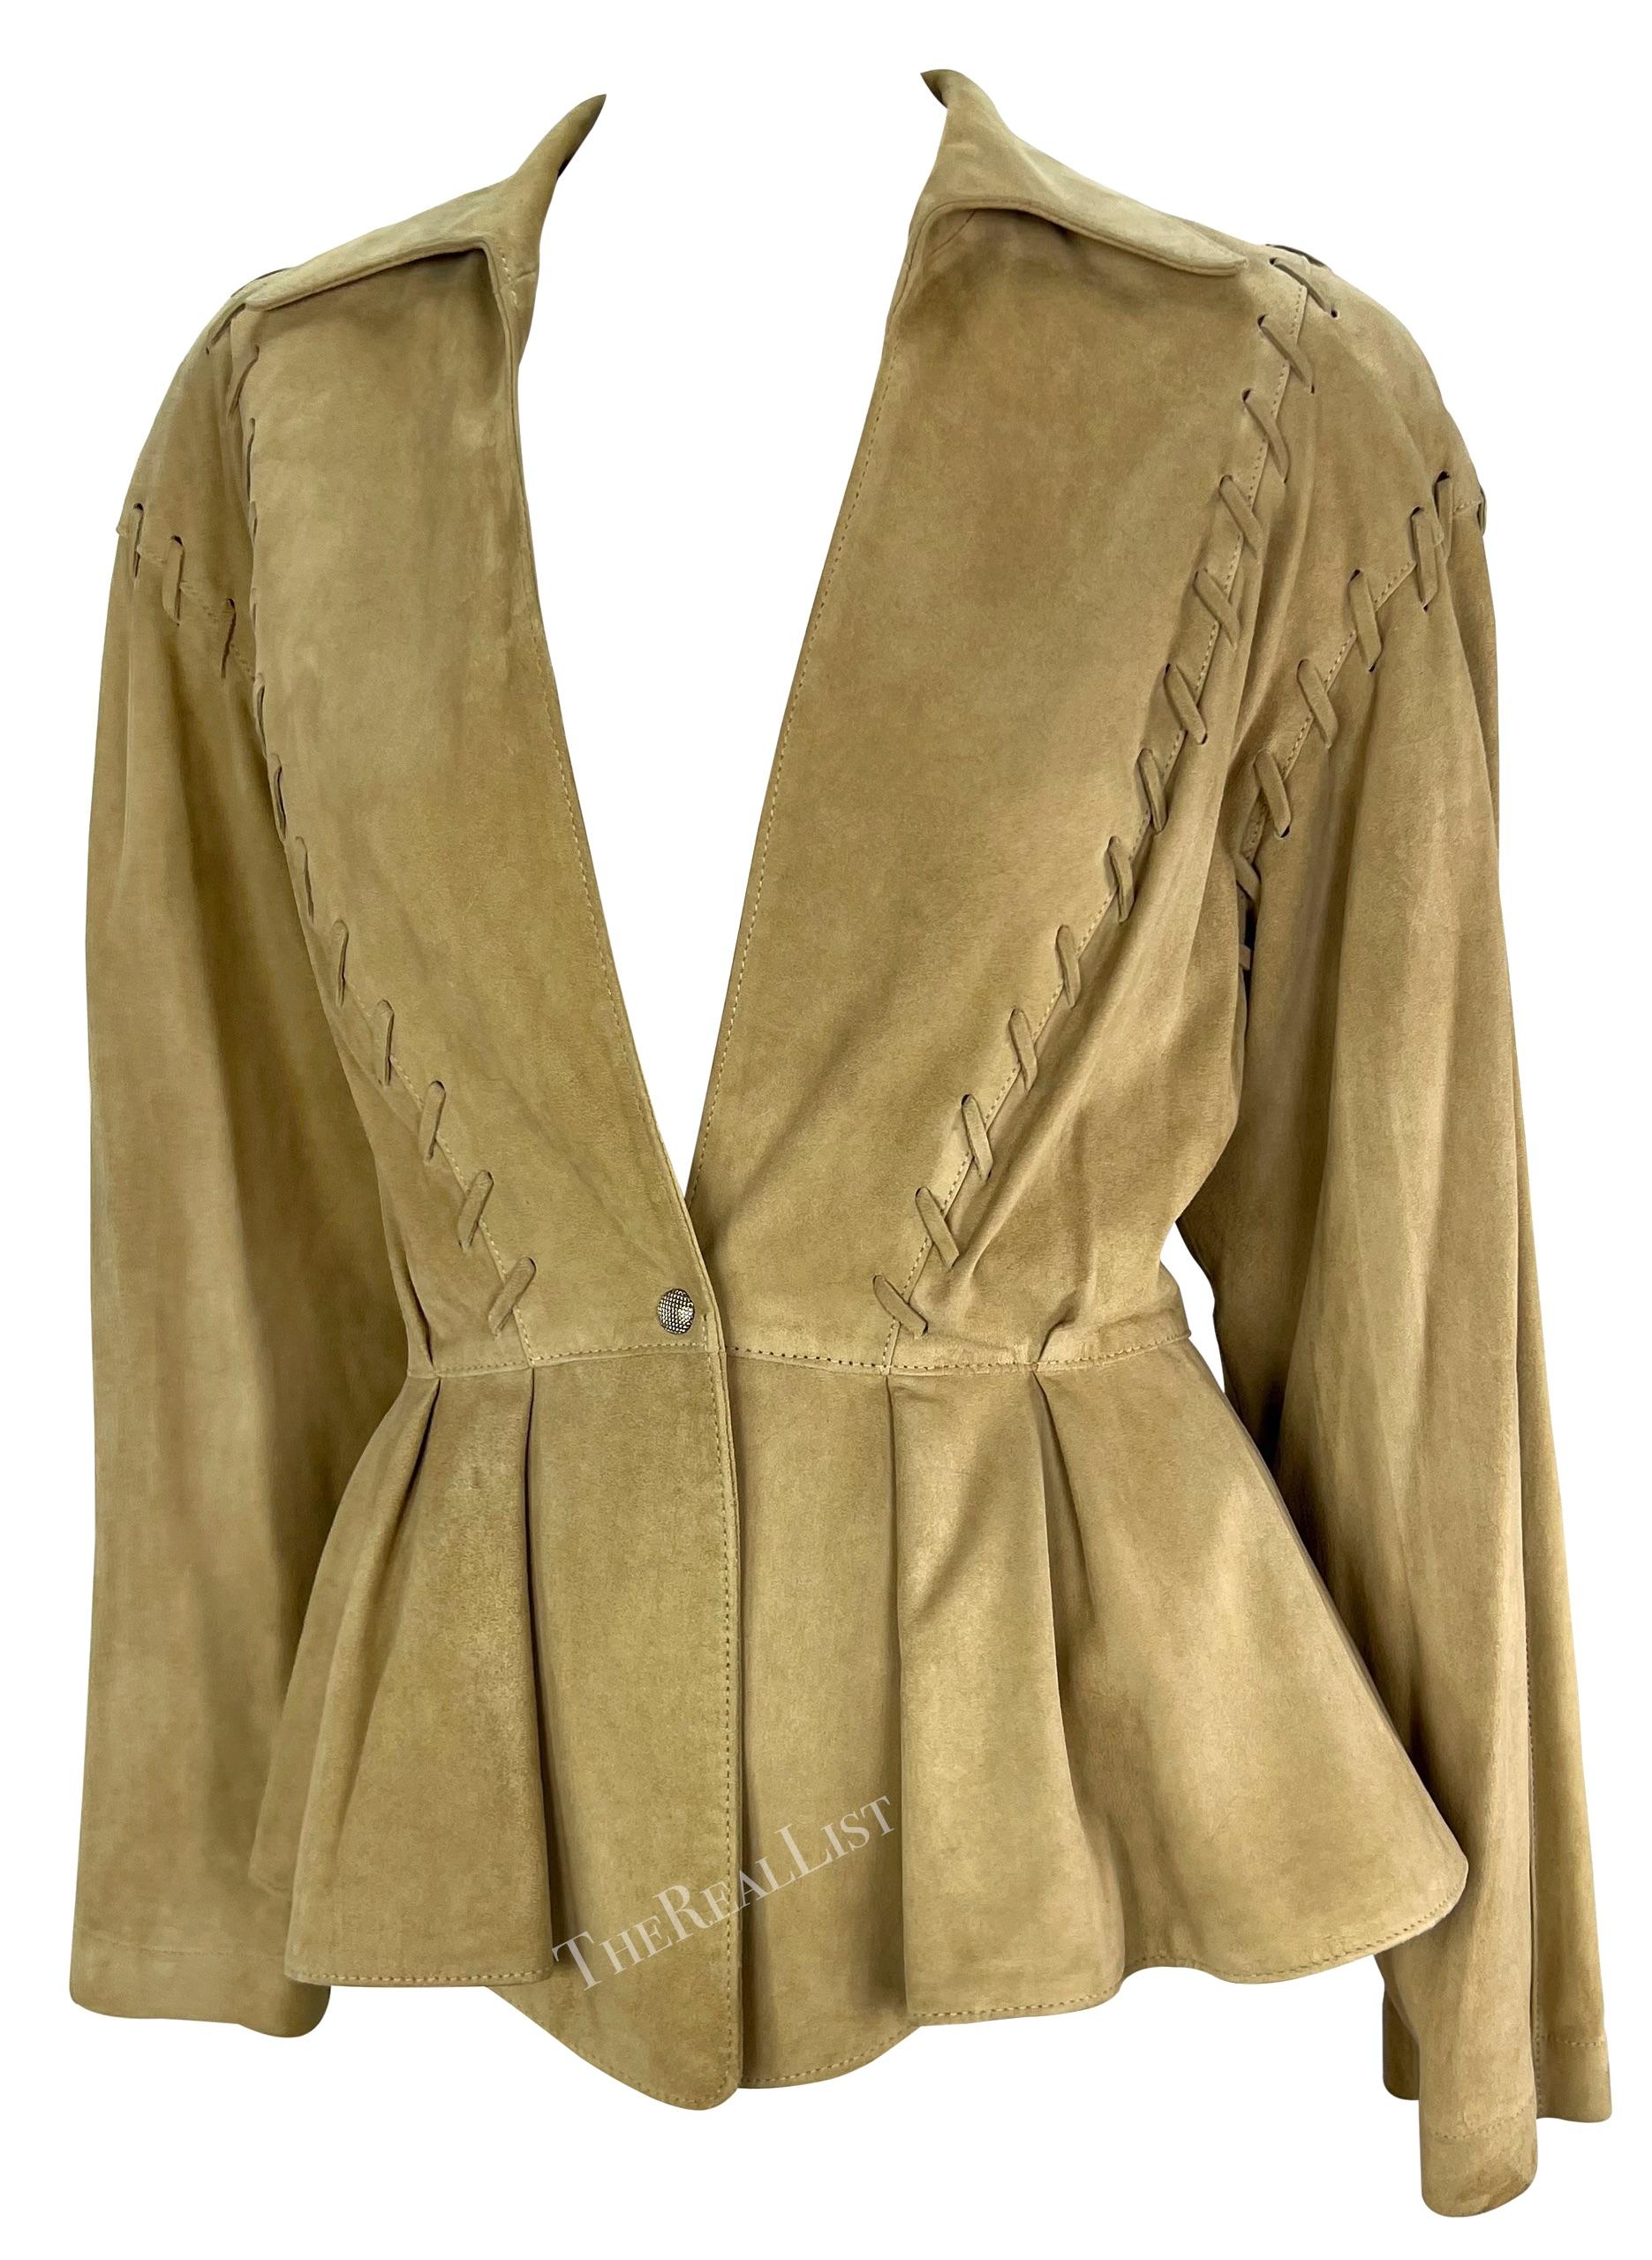 Diese umwerfende Jacke aus hellbraunem Wildleder von Thierry Mugler ist ein absolutes Highlight der 1990er Jahre. Die vollständig aus hellbraunem Wildleder gefertigte Jacke verfügt über einen einzigen Druckknopfverschluss auf der Vorderseite, einen